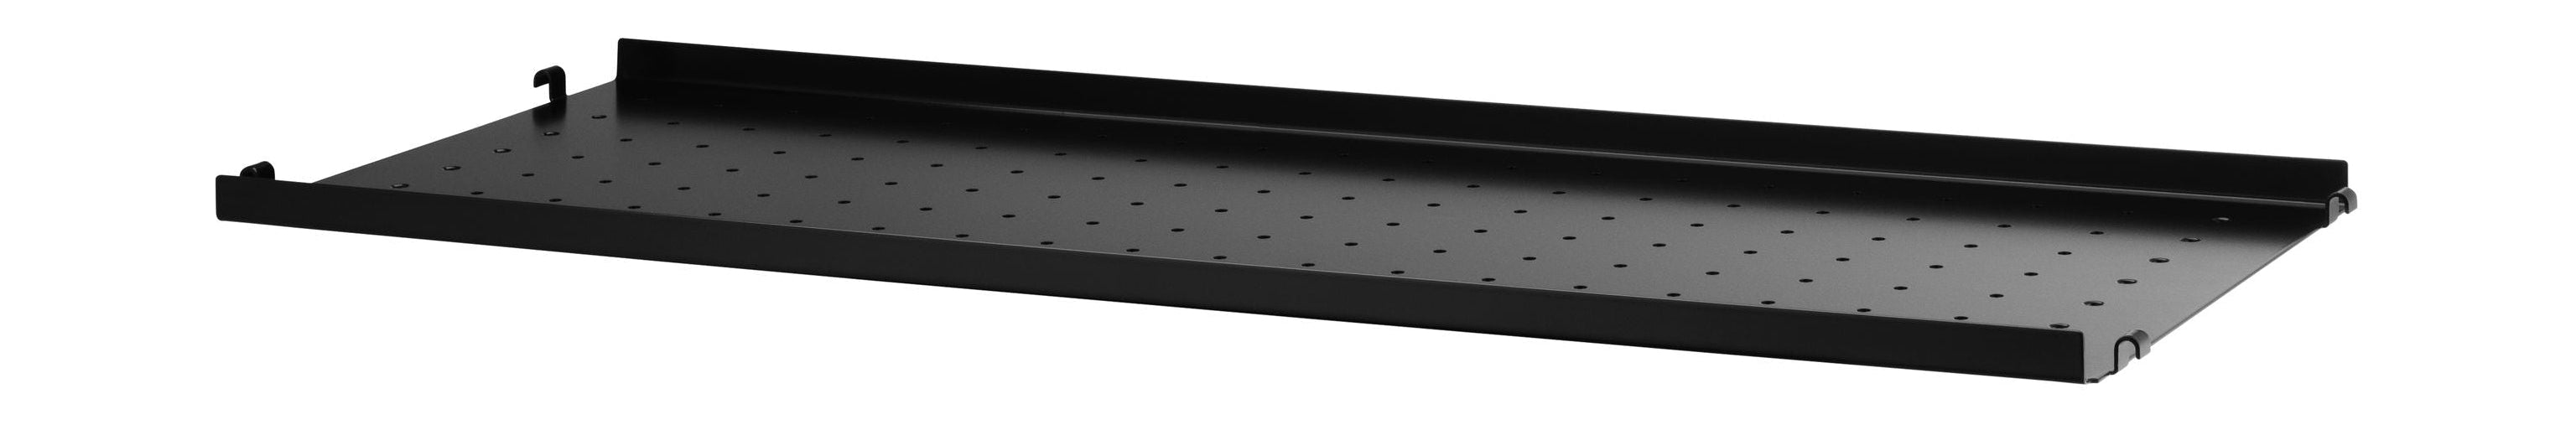 Sistema de muebles de cadena Estante de metal con borde bajo 30x78 cm, negro